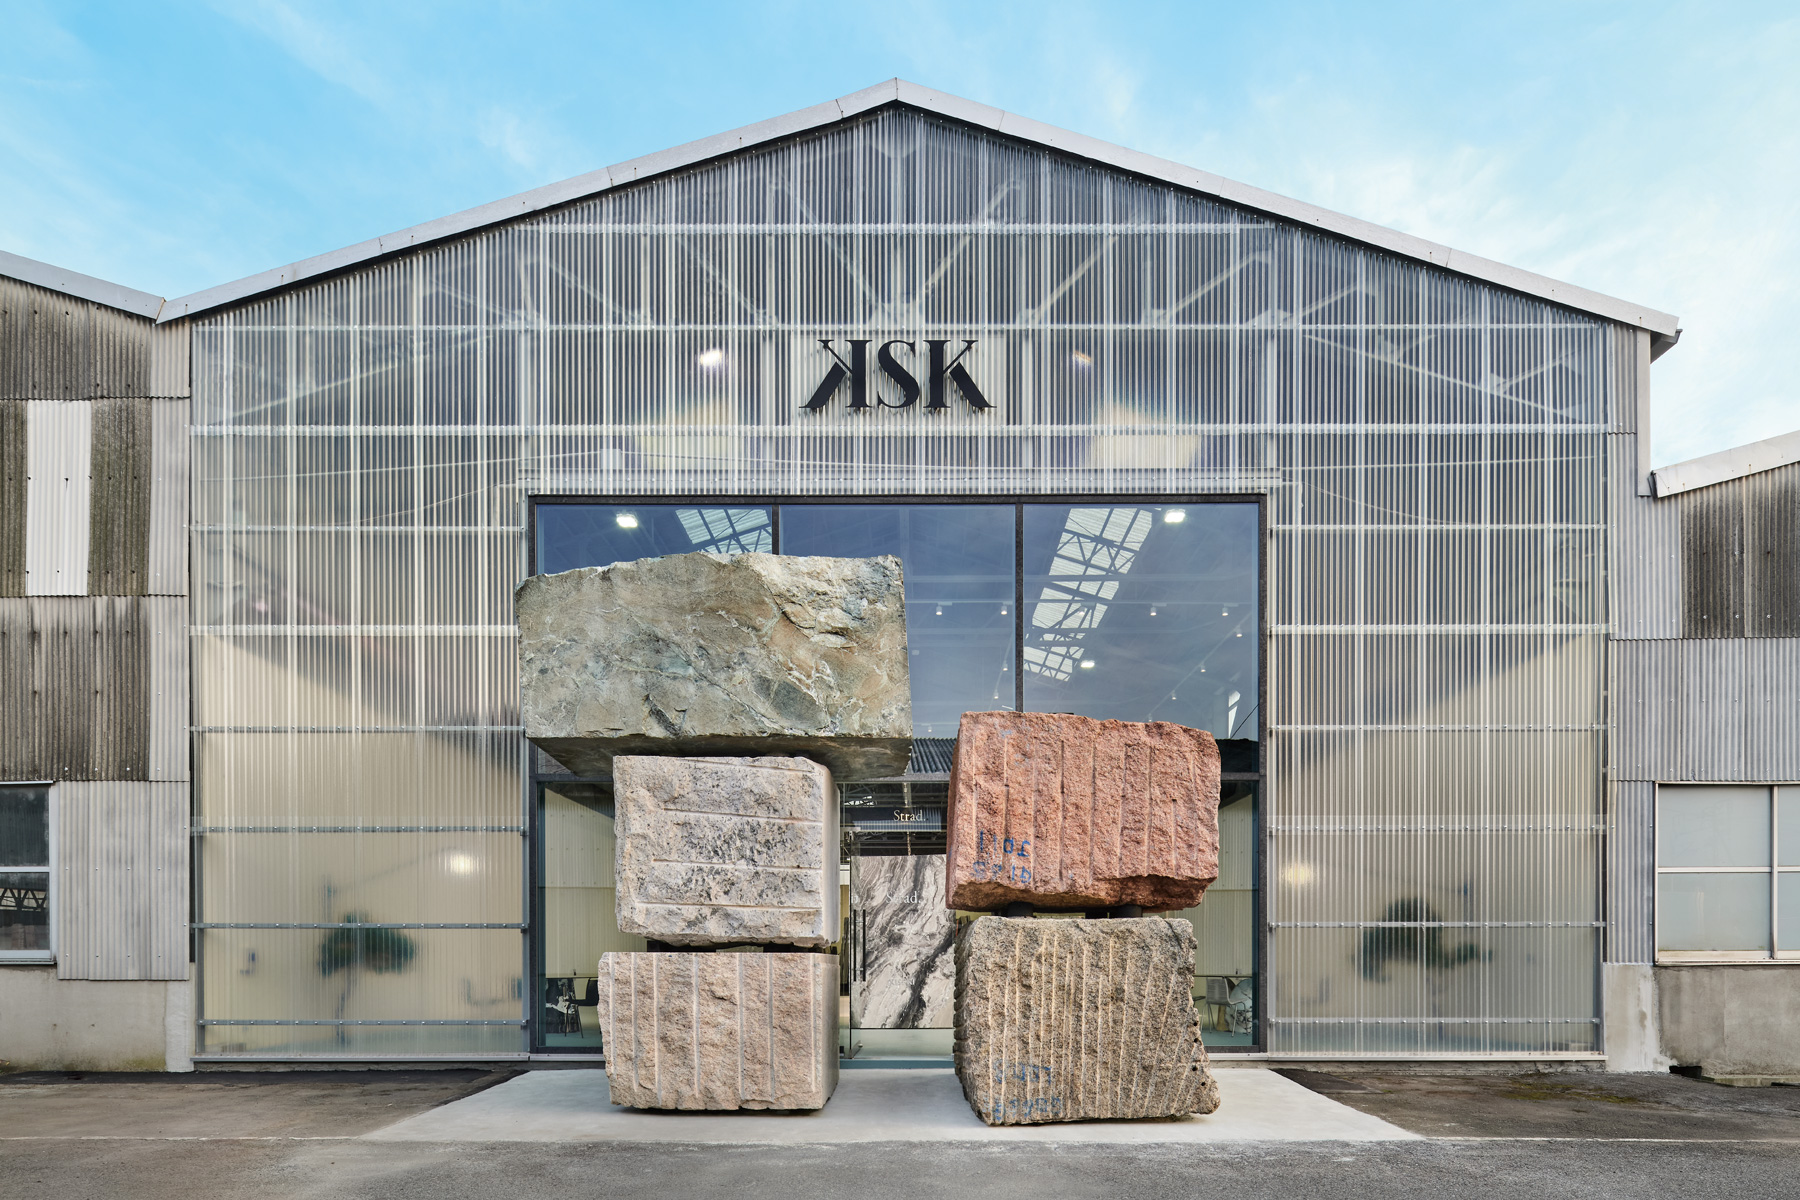 関ヶ原石材、世界の天然石を紹介する新ブランド「Strad.」を設立 専用ギャラリー「Strad. Stone Gallery」もオープン |  Webマガジン「AXIS」 | デザインのWebメディア